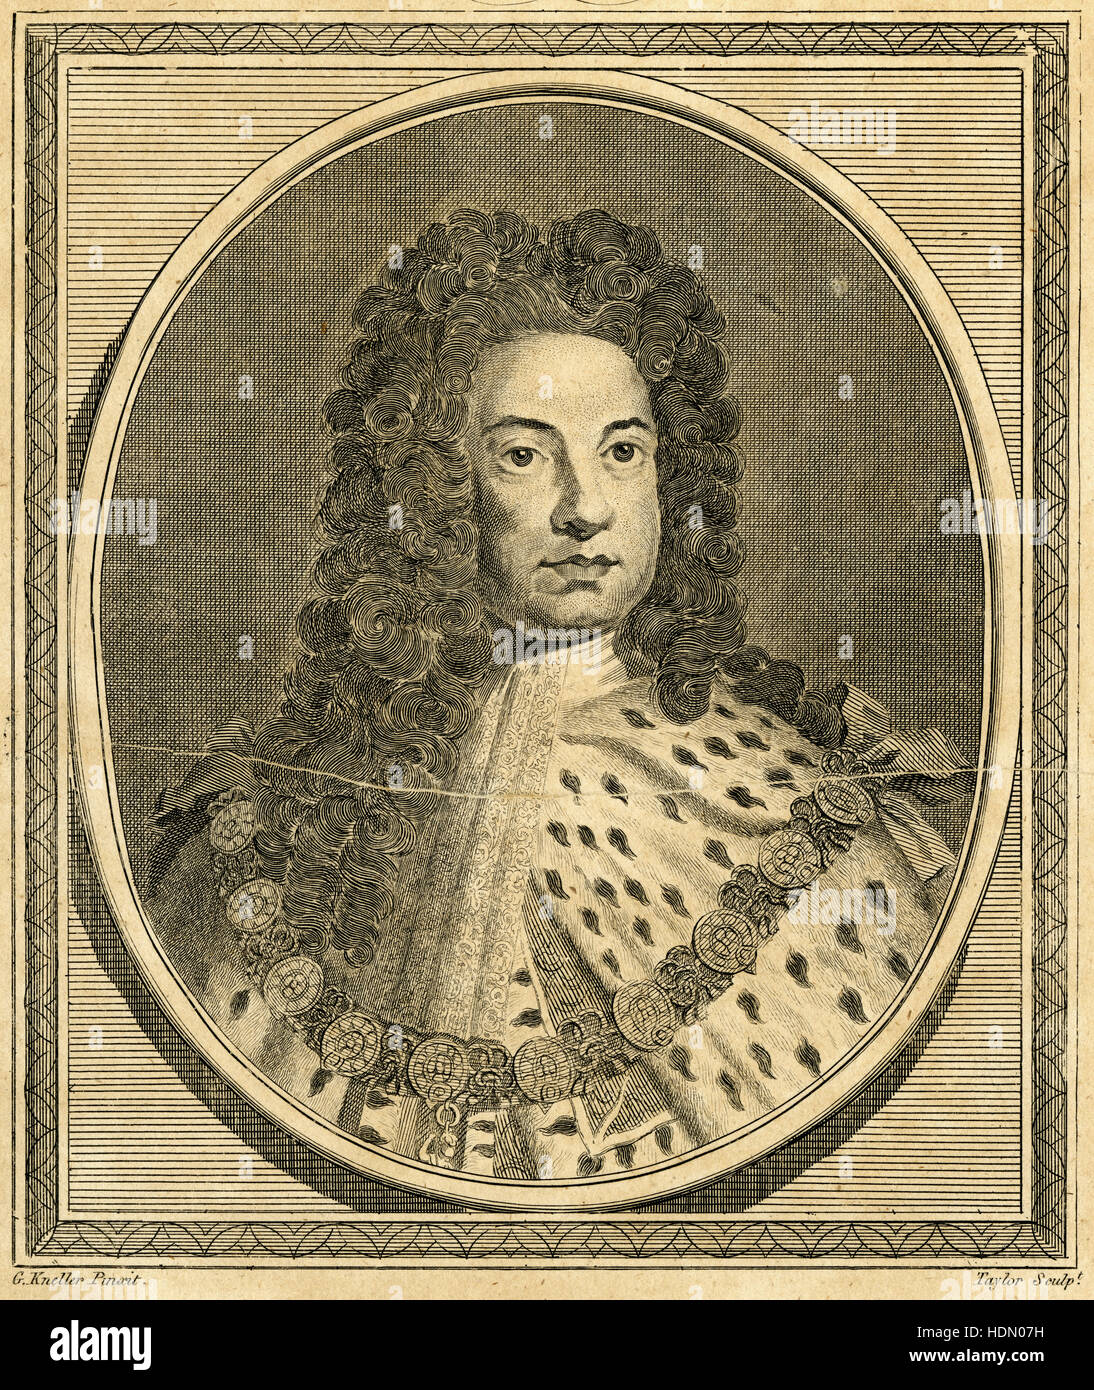 Gravure ancienne 1788, King George I. George I (1660-1727) fut roi de Grande-Bretagne et d'Irlande de 1 août 1714 jusqu'à sa mort, et gouverneur du duché et l'électorat de Brunswick-lunebourg (Hanovre) dans le Saint Empire romain à partir de 1698. SOURCE : gravure originale. Banque D'Images